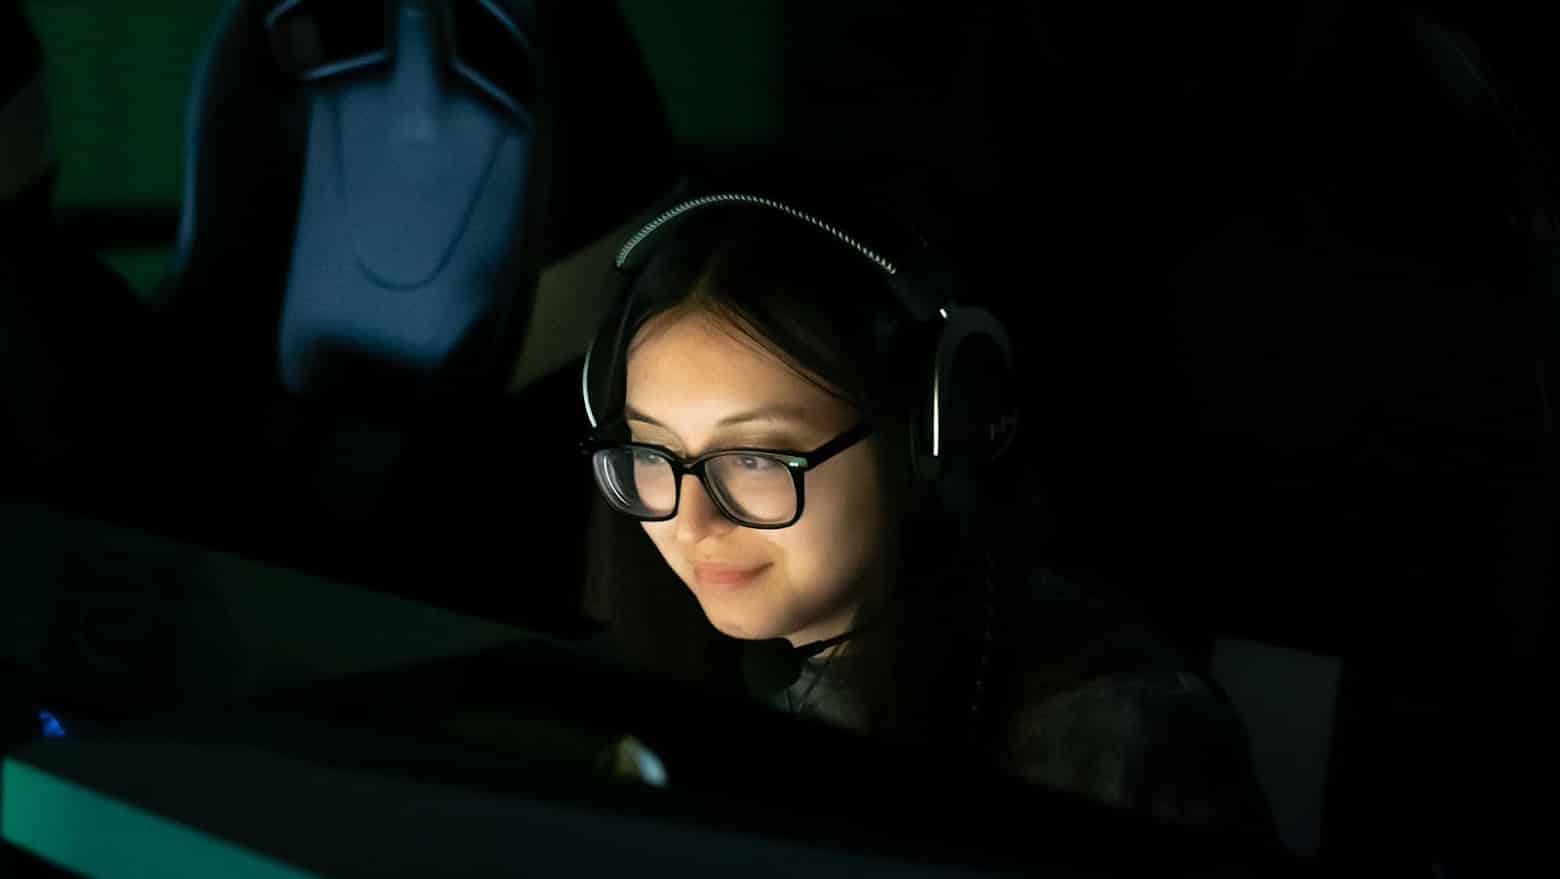 MeL ganz in Schwarz, ihr Gesicht von einem Computerbildschirm beleuchtet